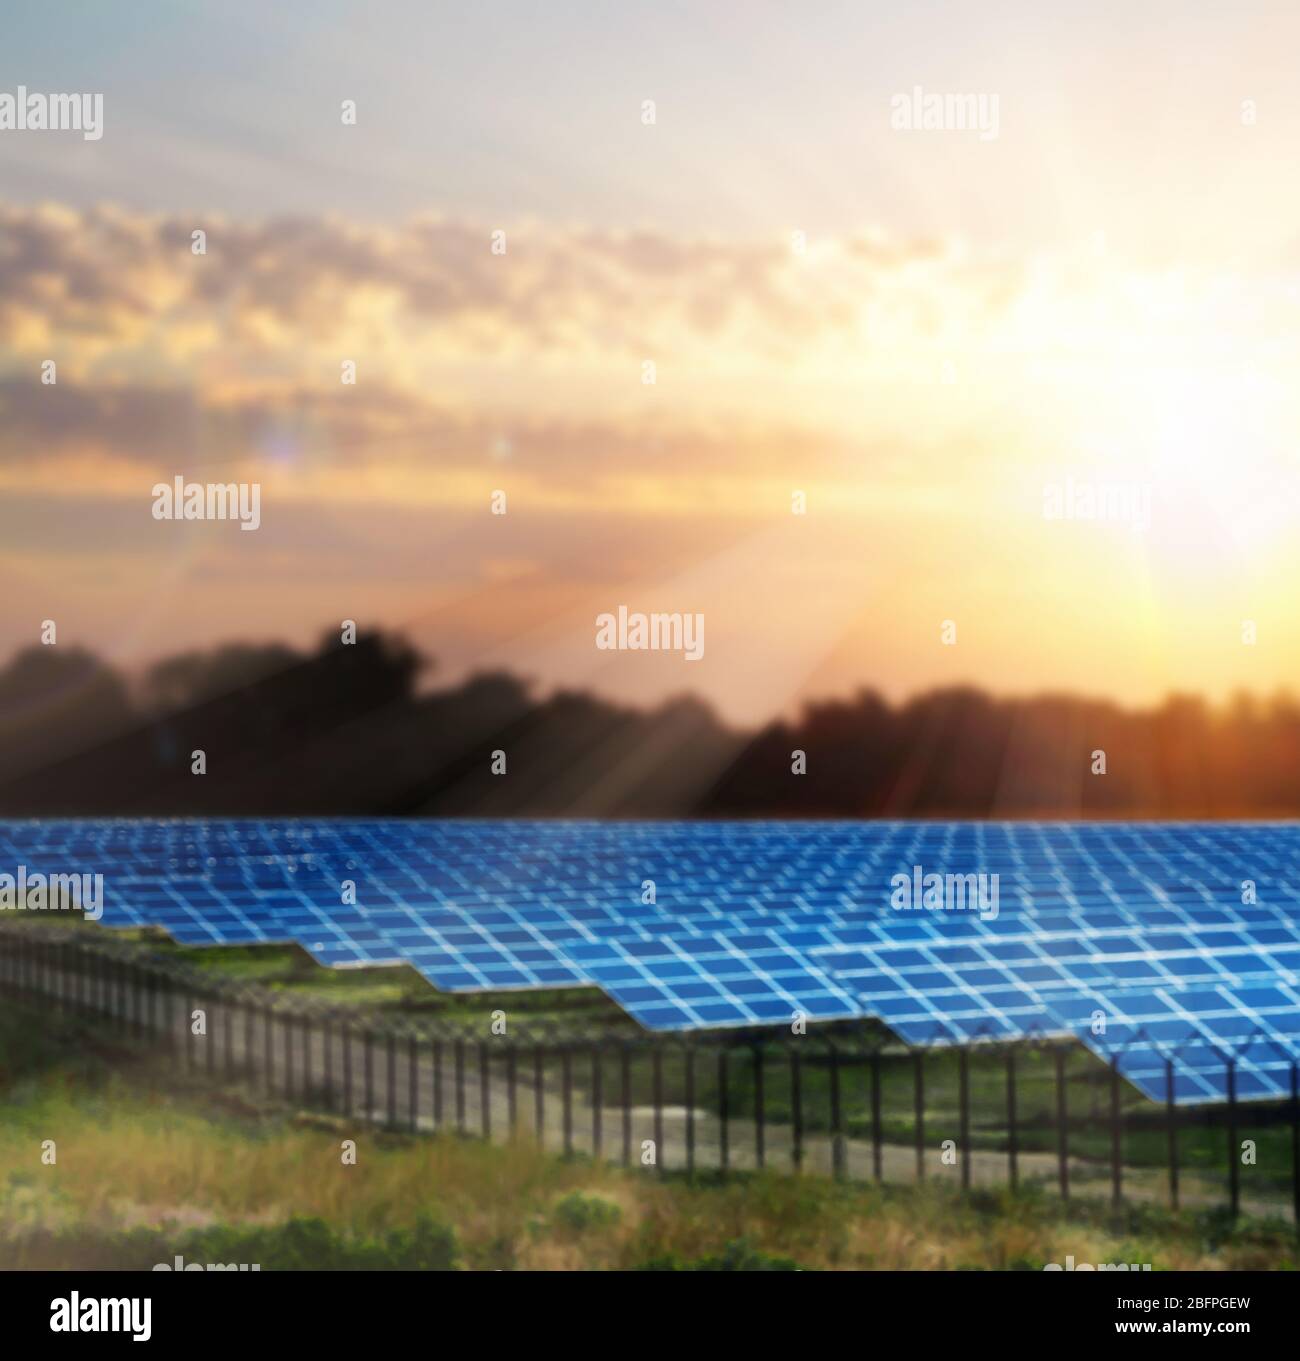 Panneaux solaires sur le terrain. Concept de ressources en énergie renouvelable Banque D'Images